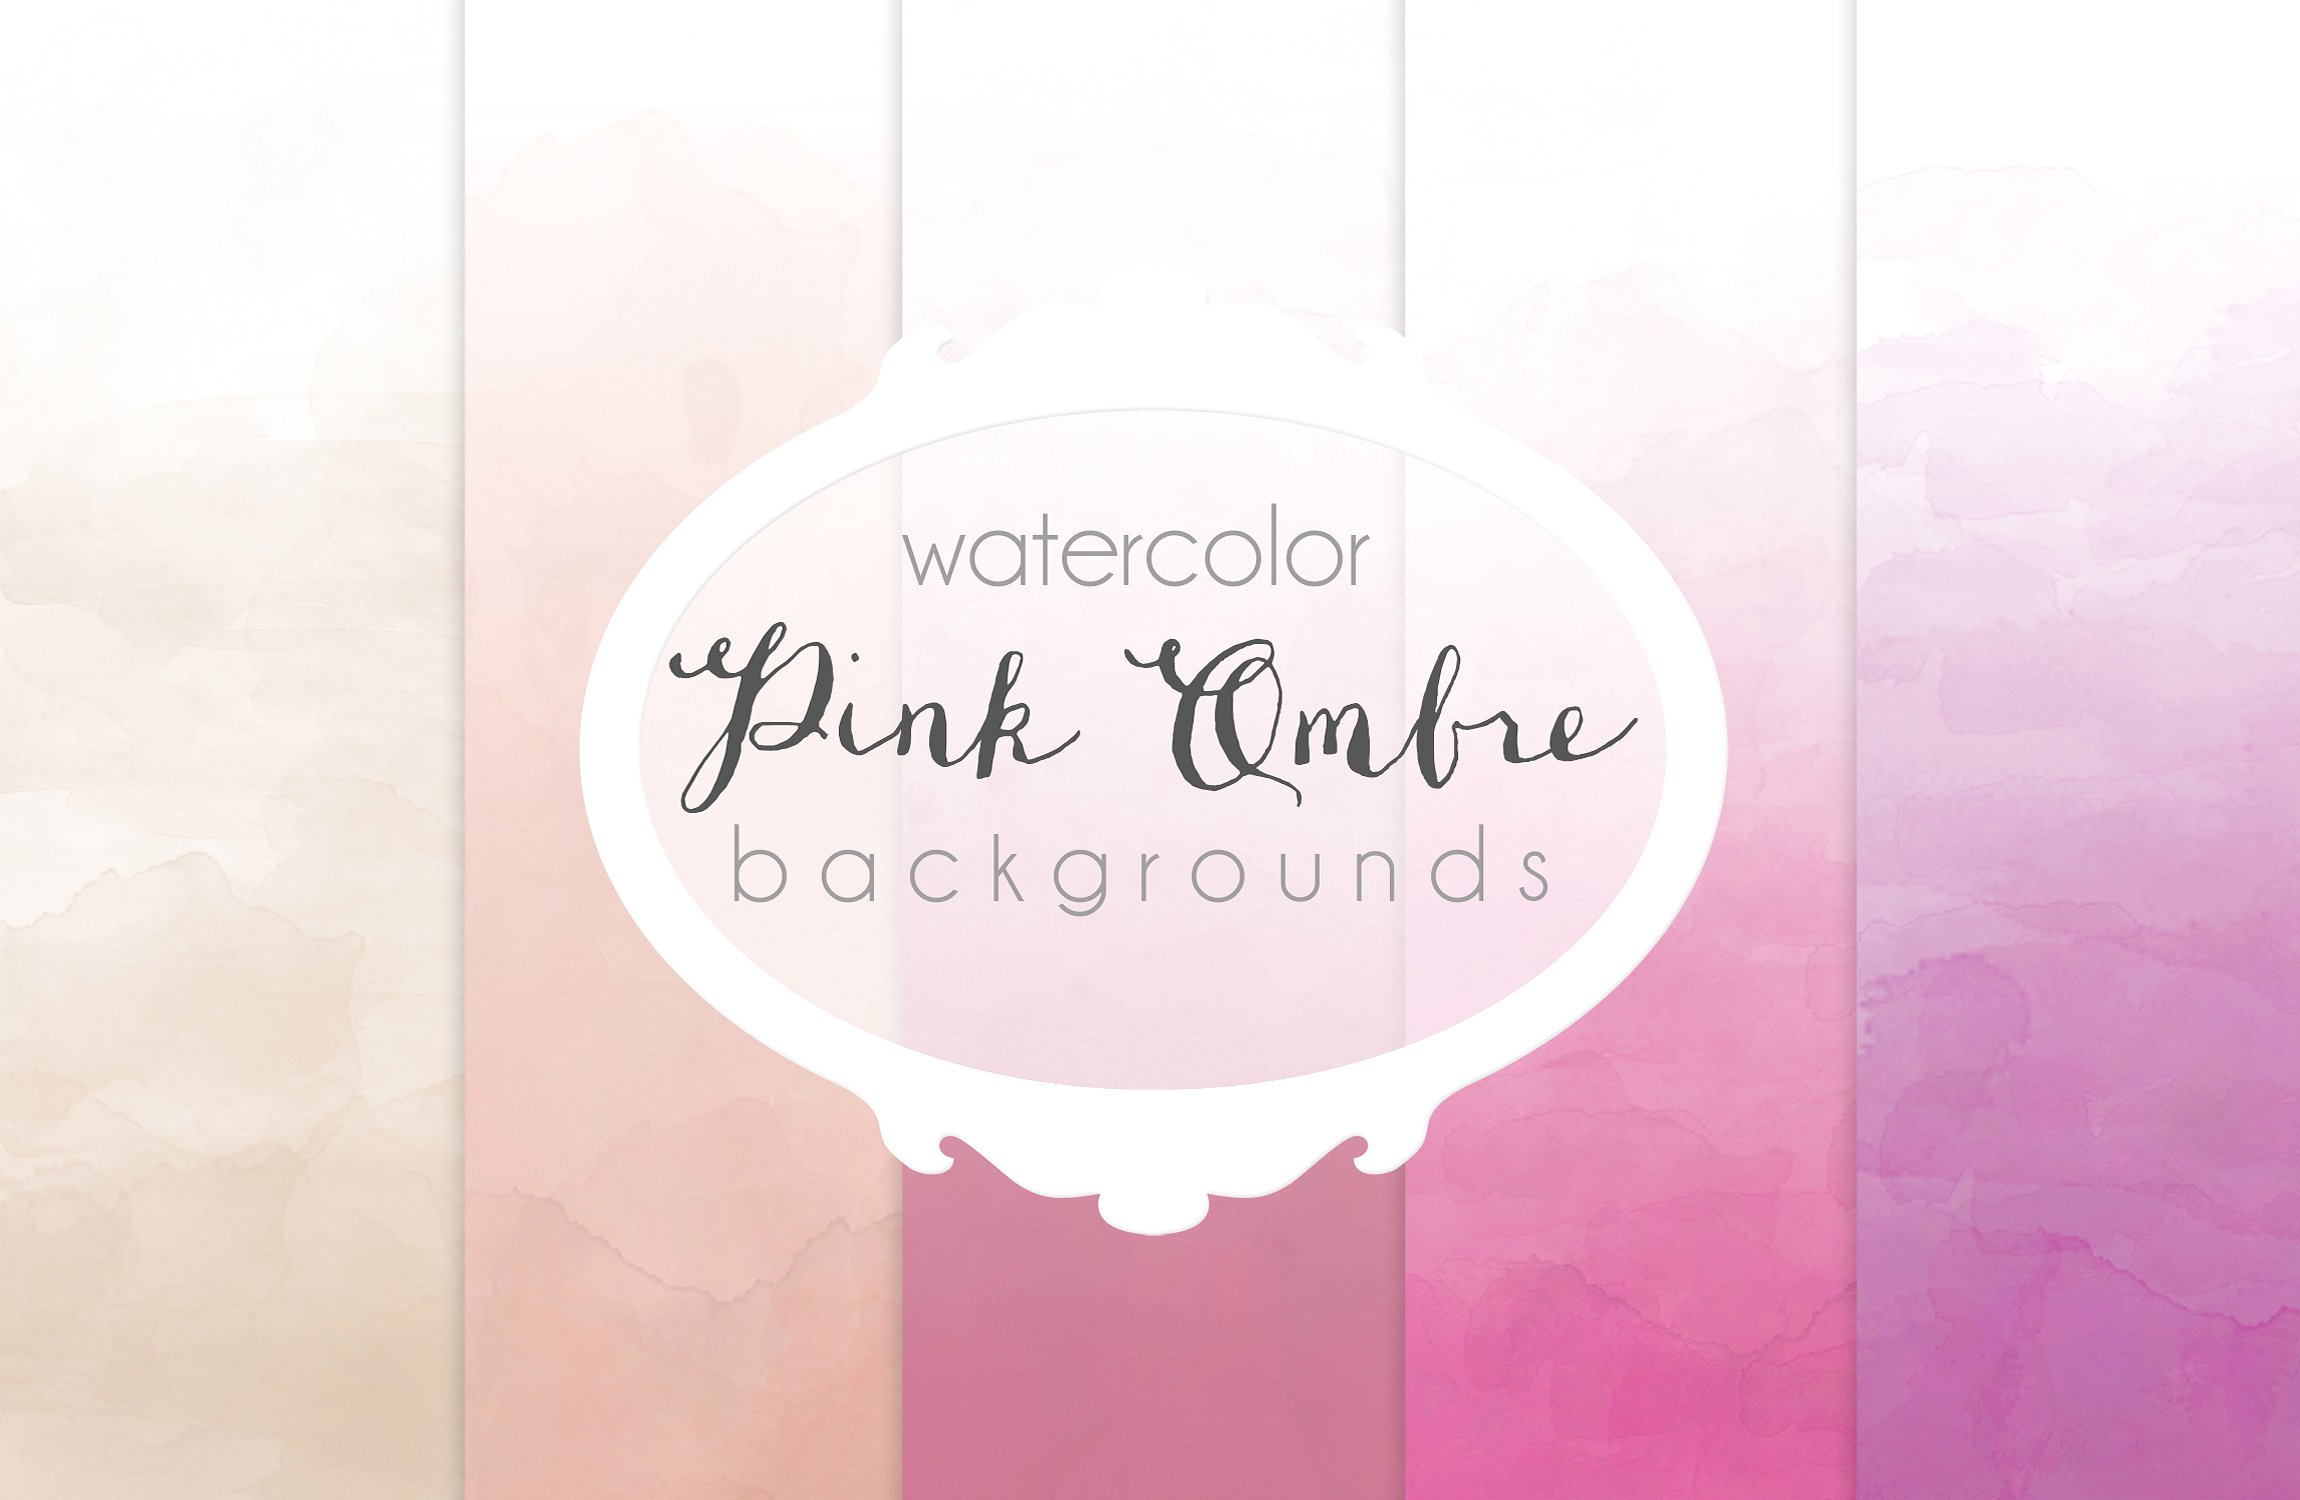 深浅条纹水彩背景纹理 Pink Ombre watercolor backgrounds插图1